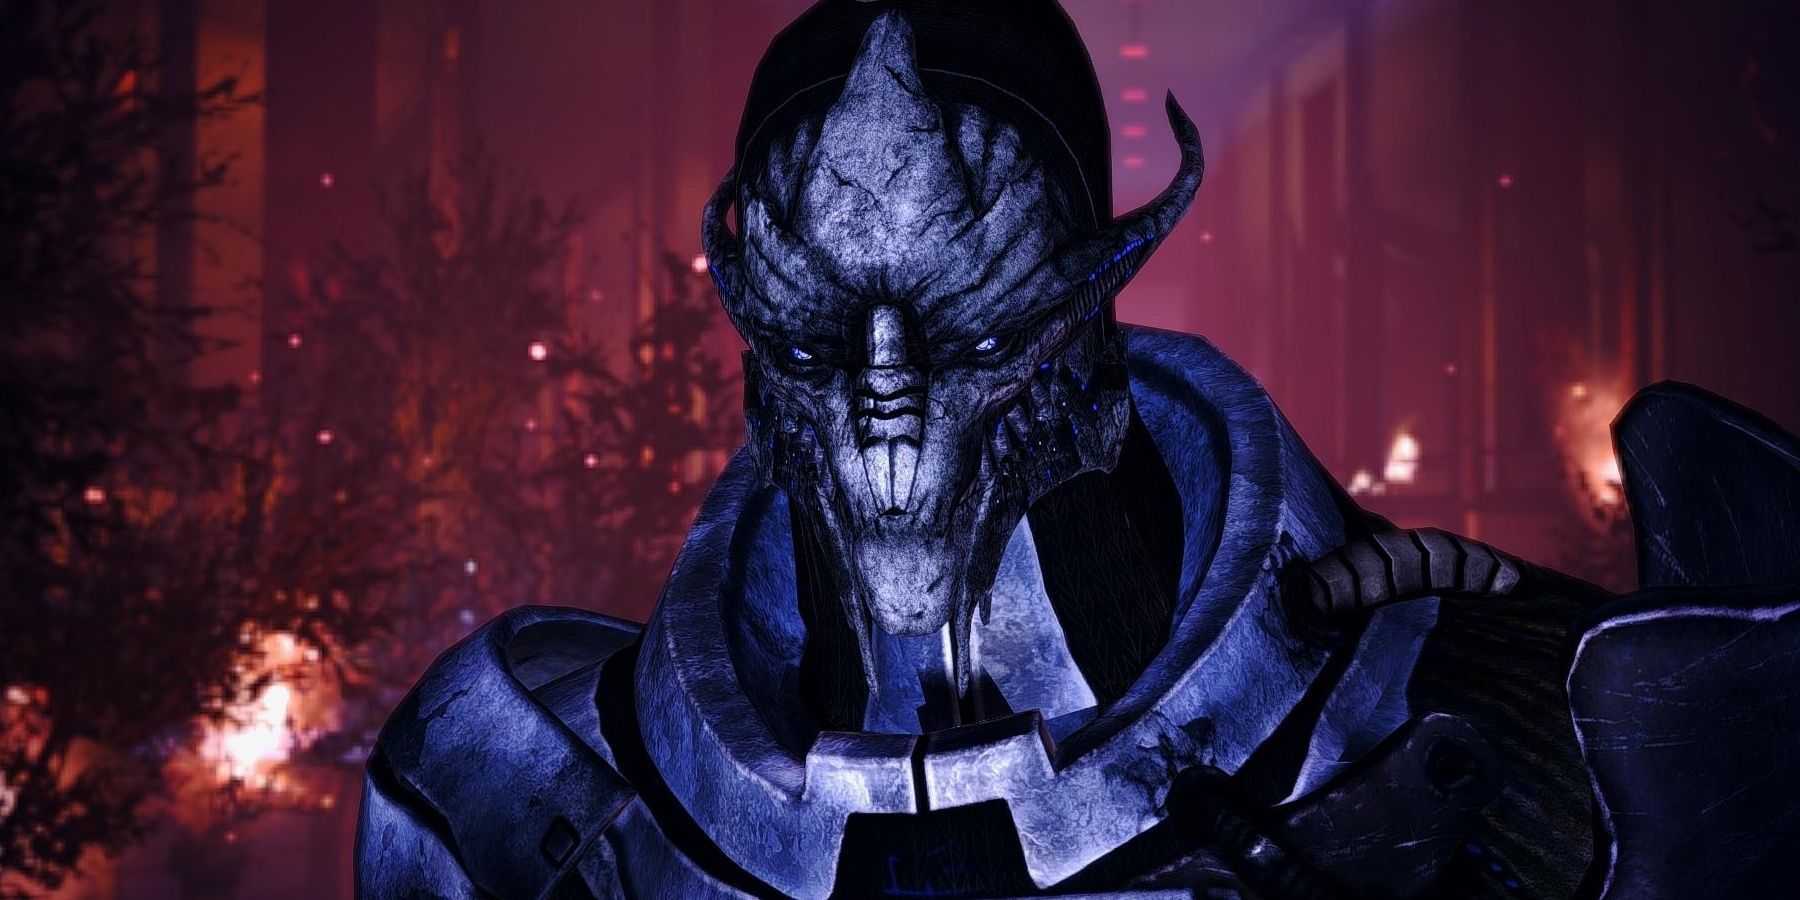 Mass Effect Saren on the Citadel